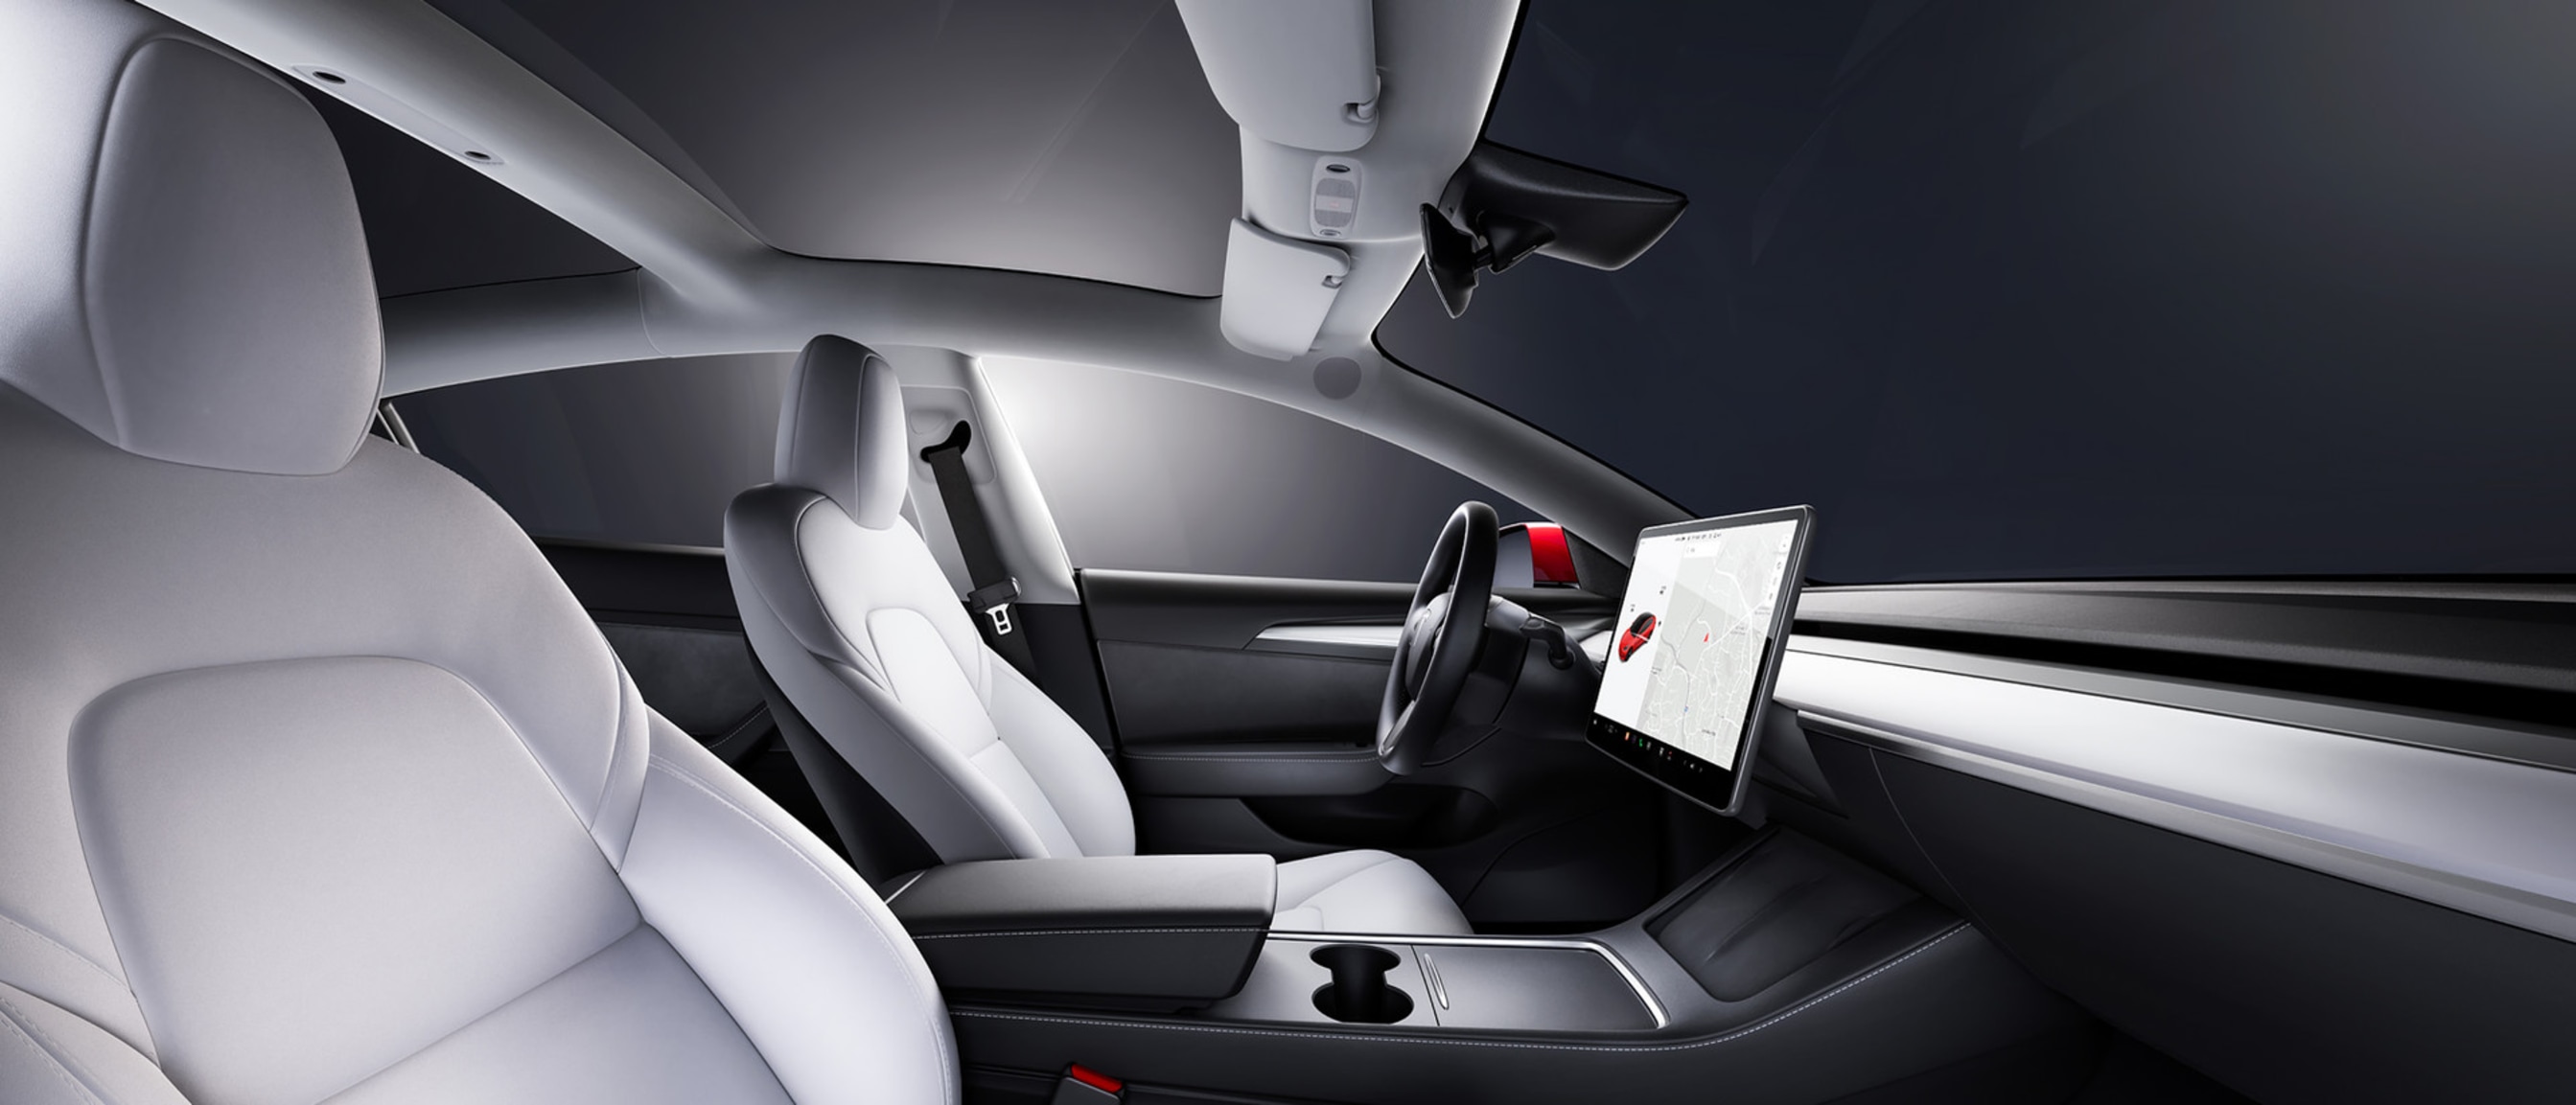 Prikaz prednjih sjedala iz unutrašnjosti vozila Model 3 koja je bijele boje